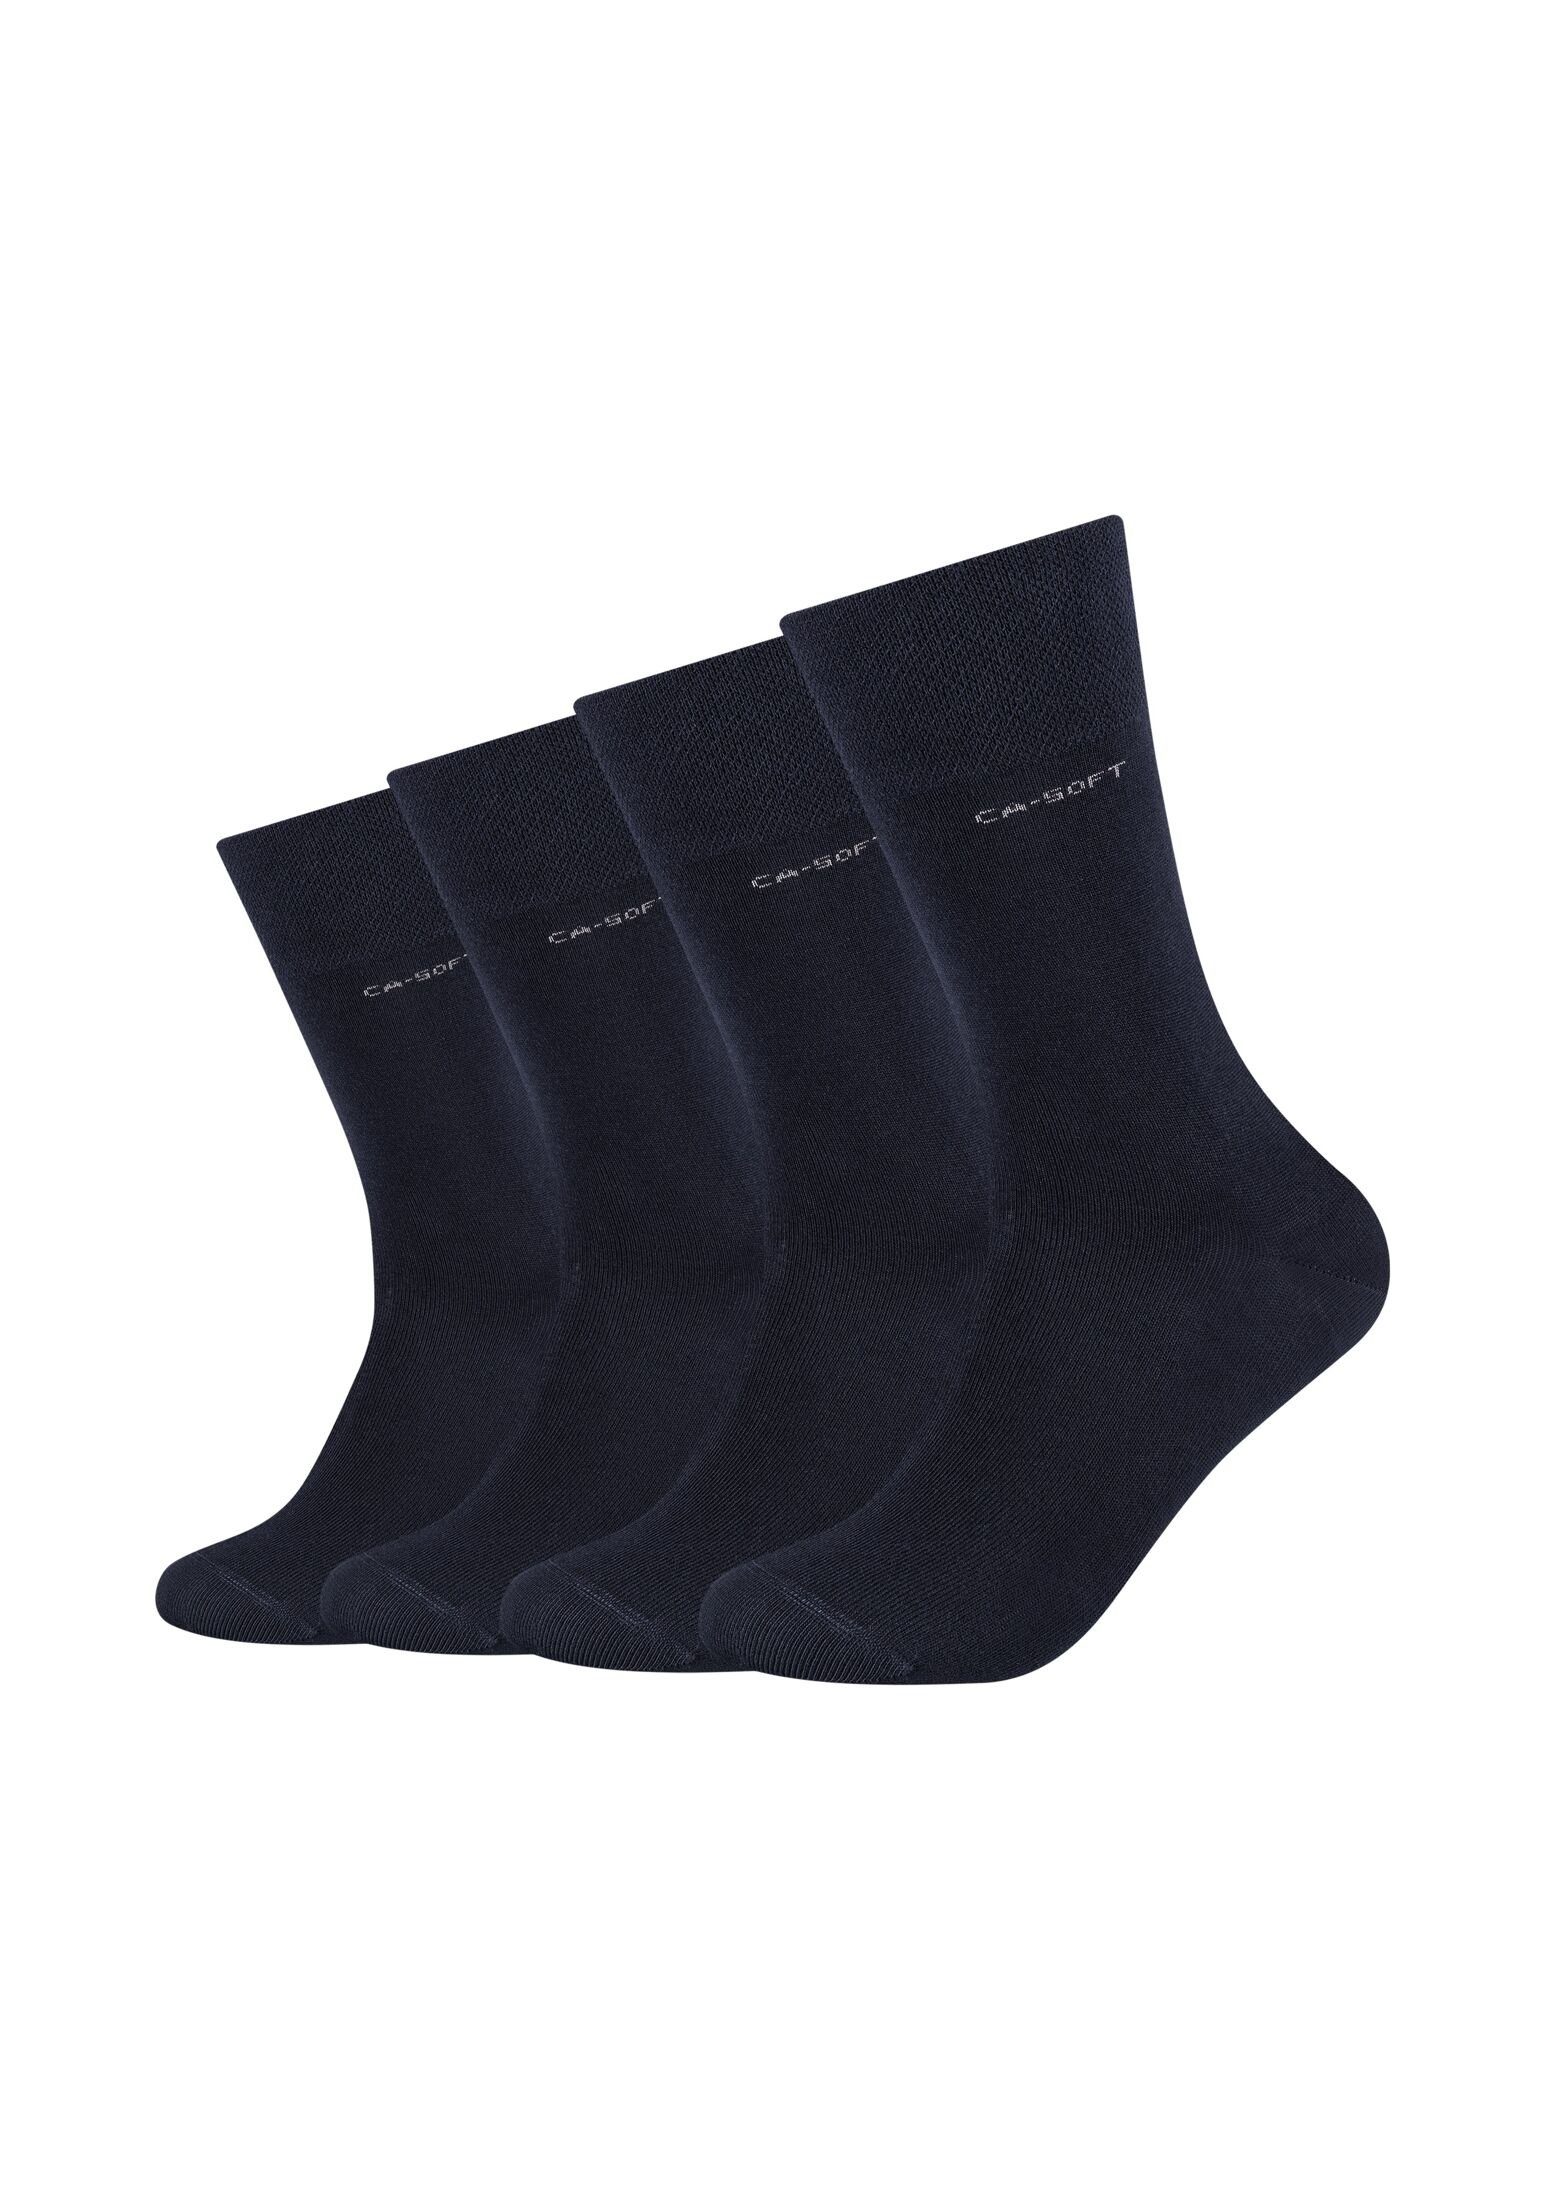 Camano Socken Socken 4er Pack navy